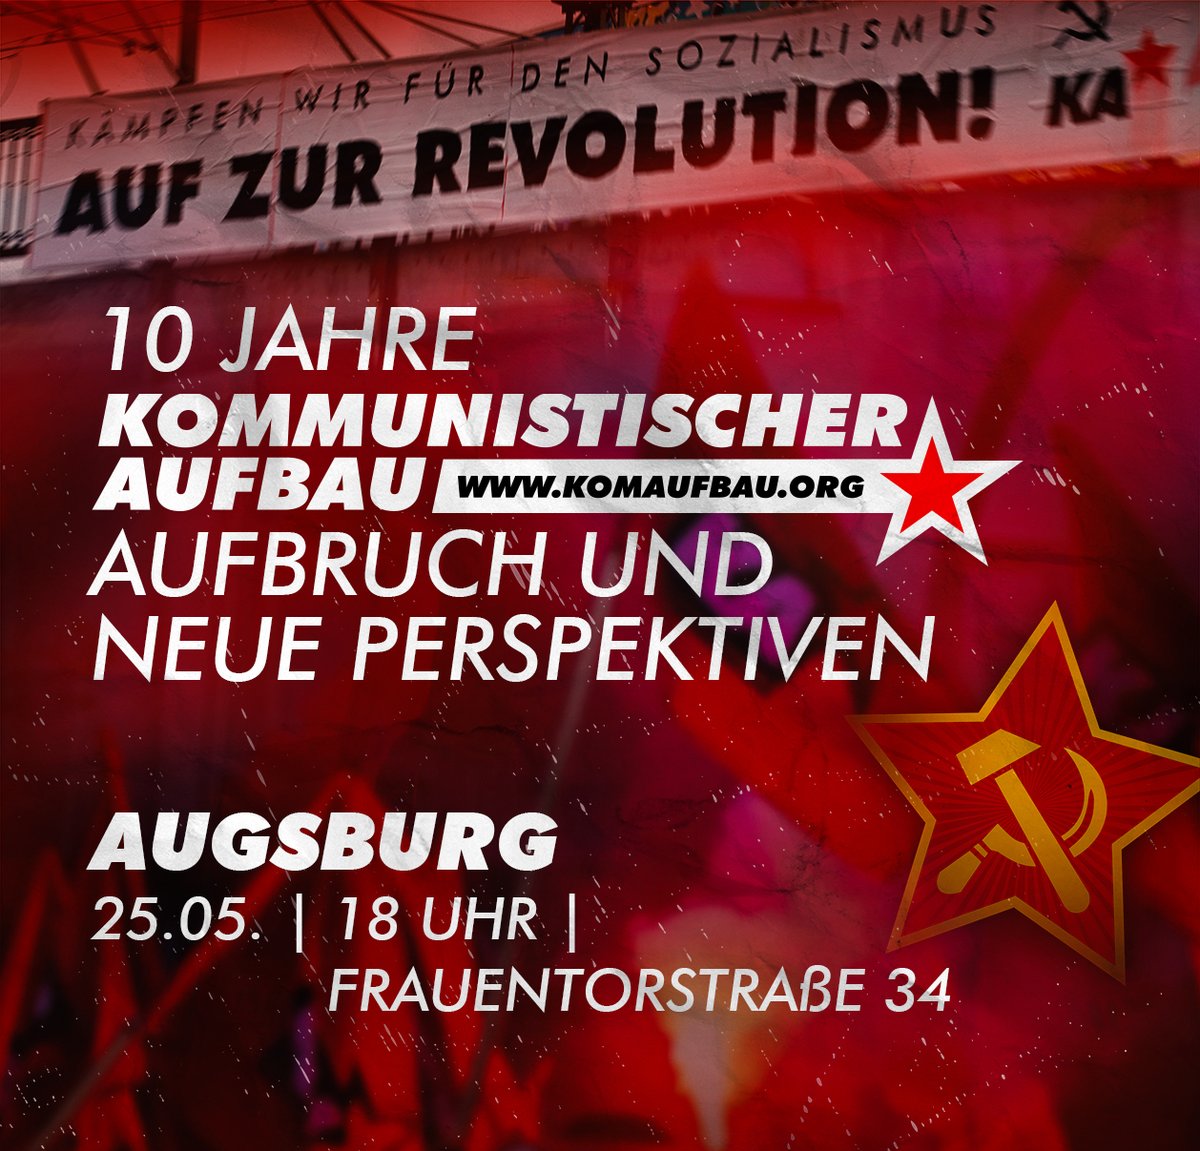 10 Jahre #KommunistischerAufbau: Aufbruch und neue Perspektiven - Kommt zu unserem Vortrag in #Augsburg: